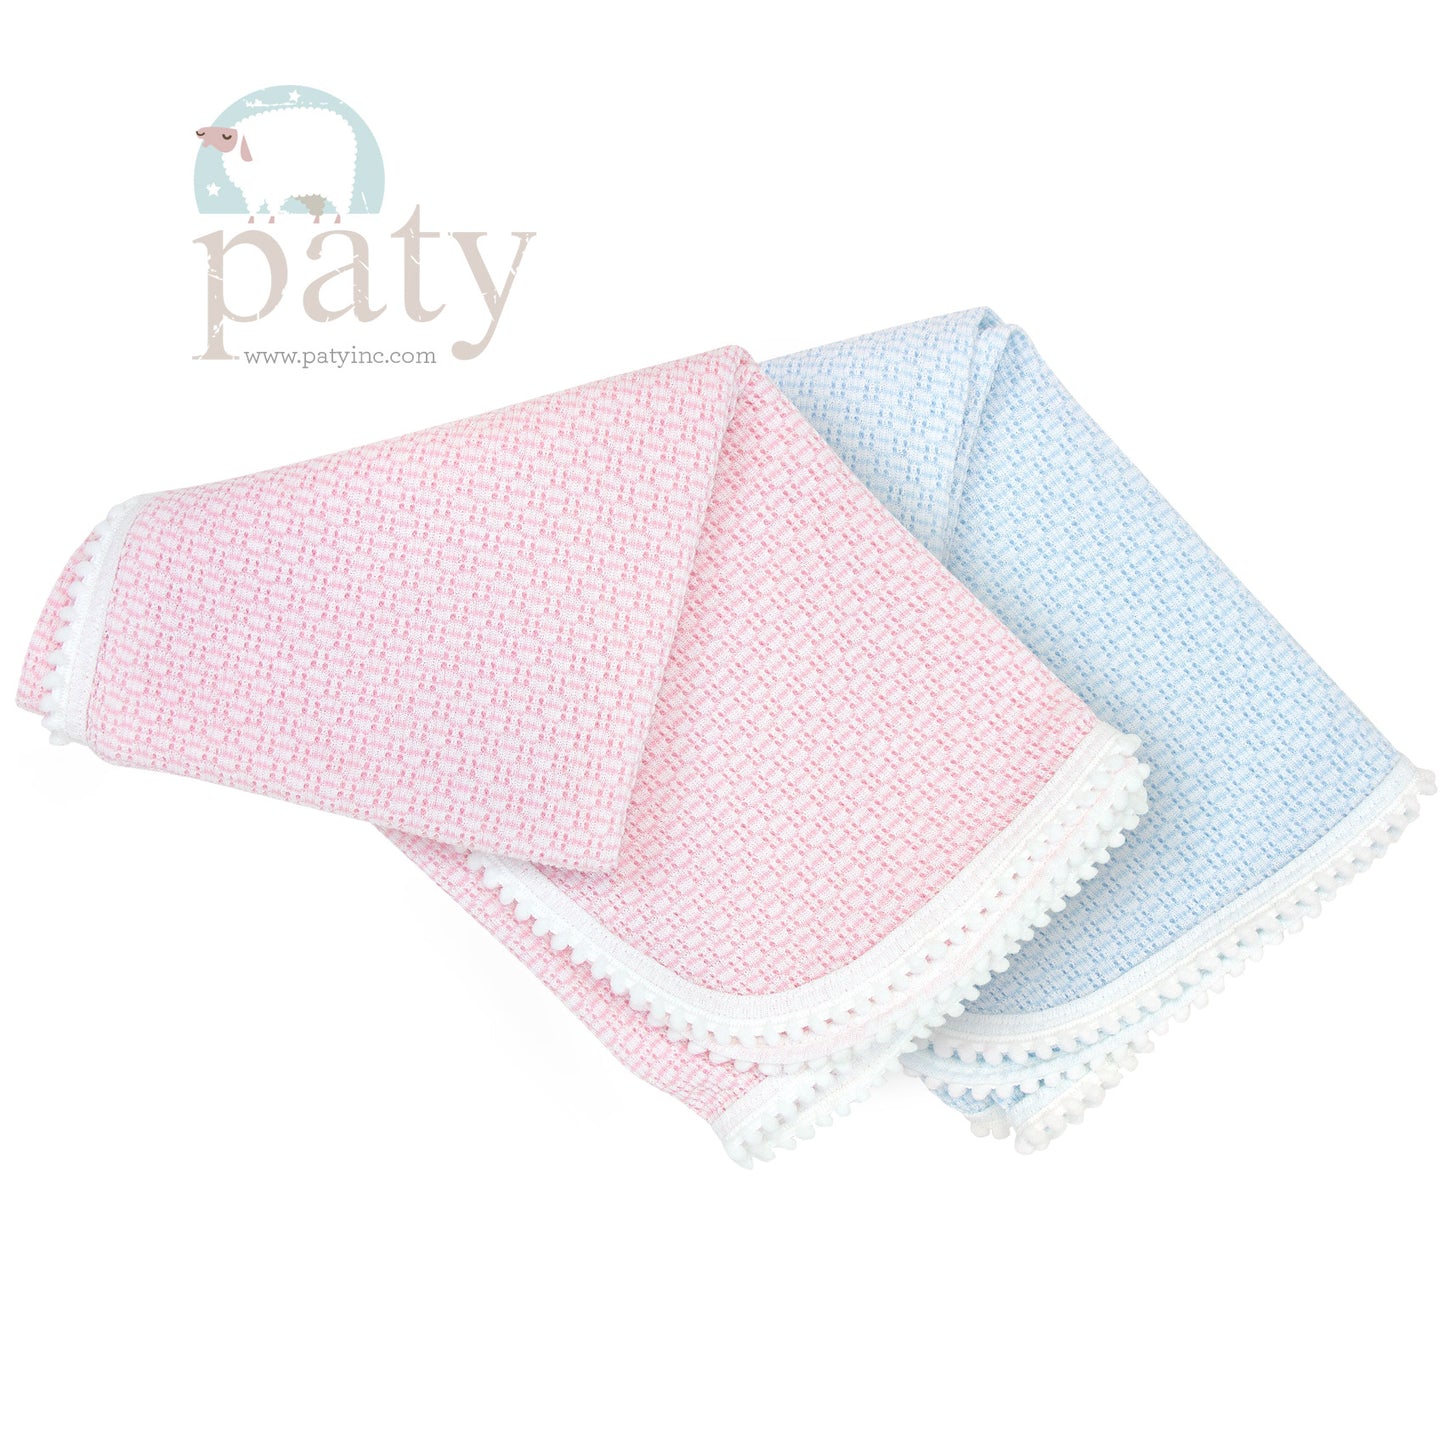 Paty Knit Blanket with Pom Pom Trim